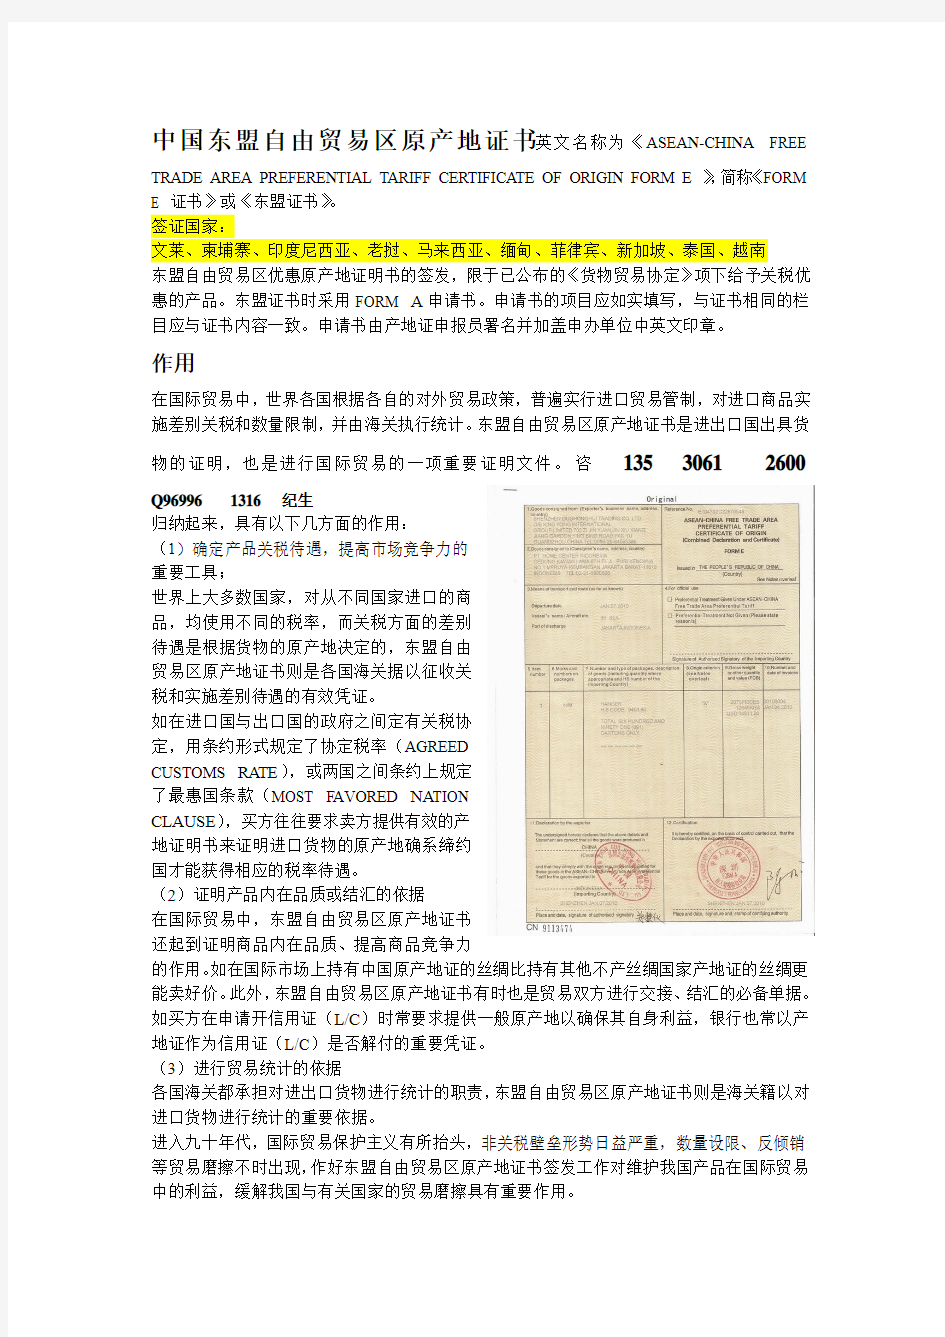 中国东盟自由贸易区原产地证书